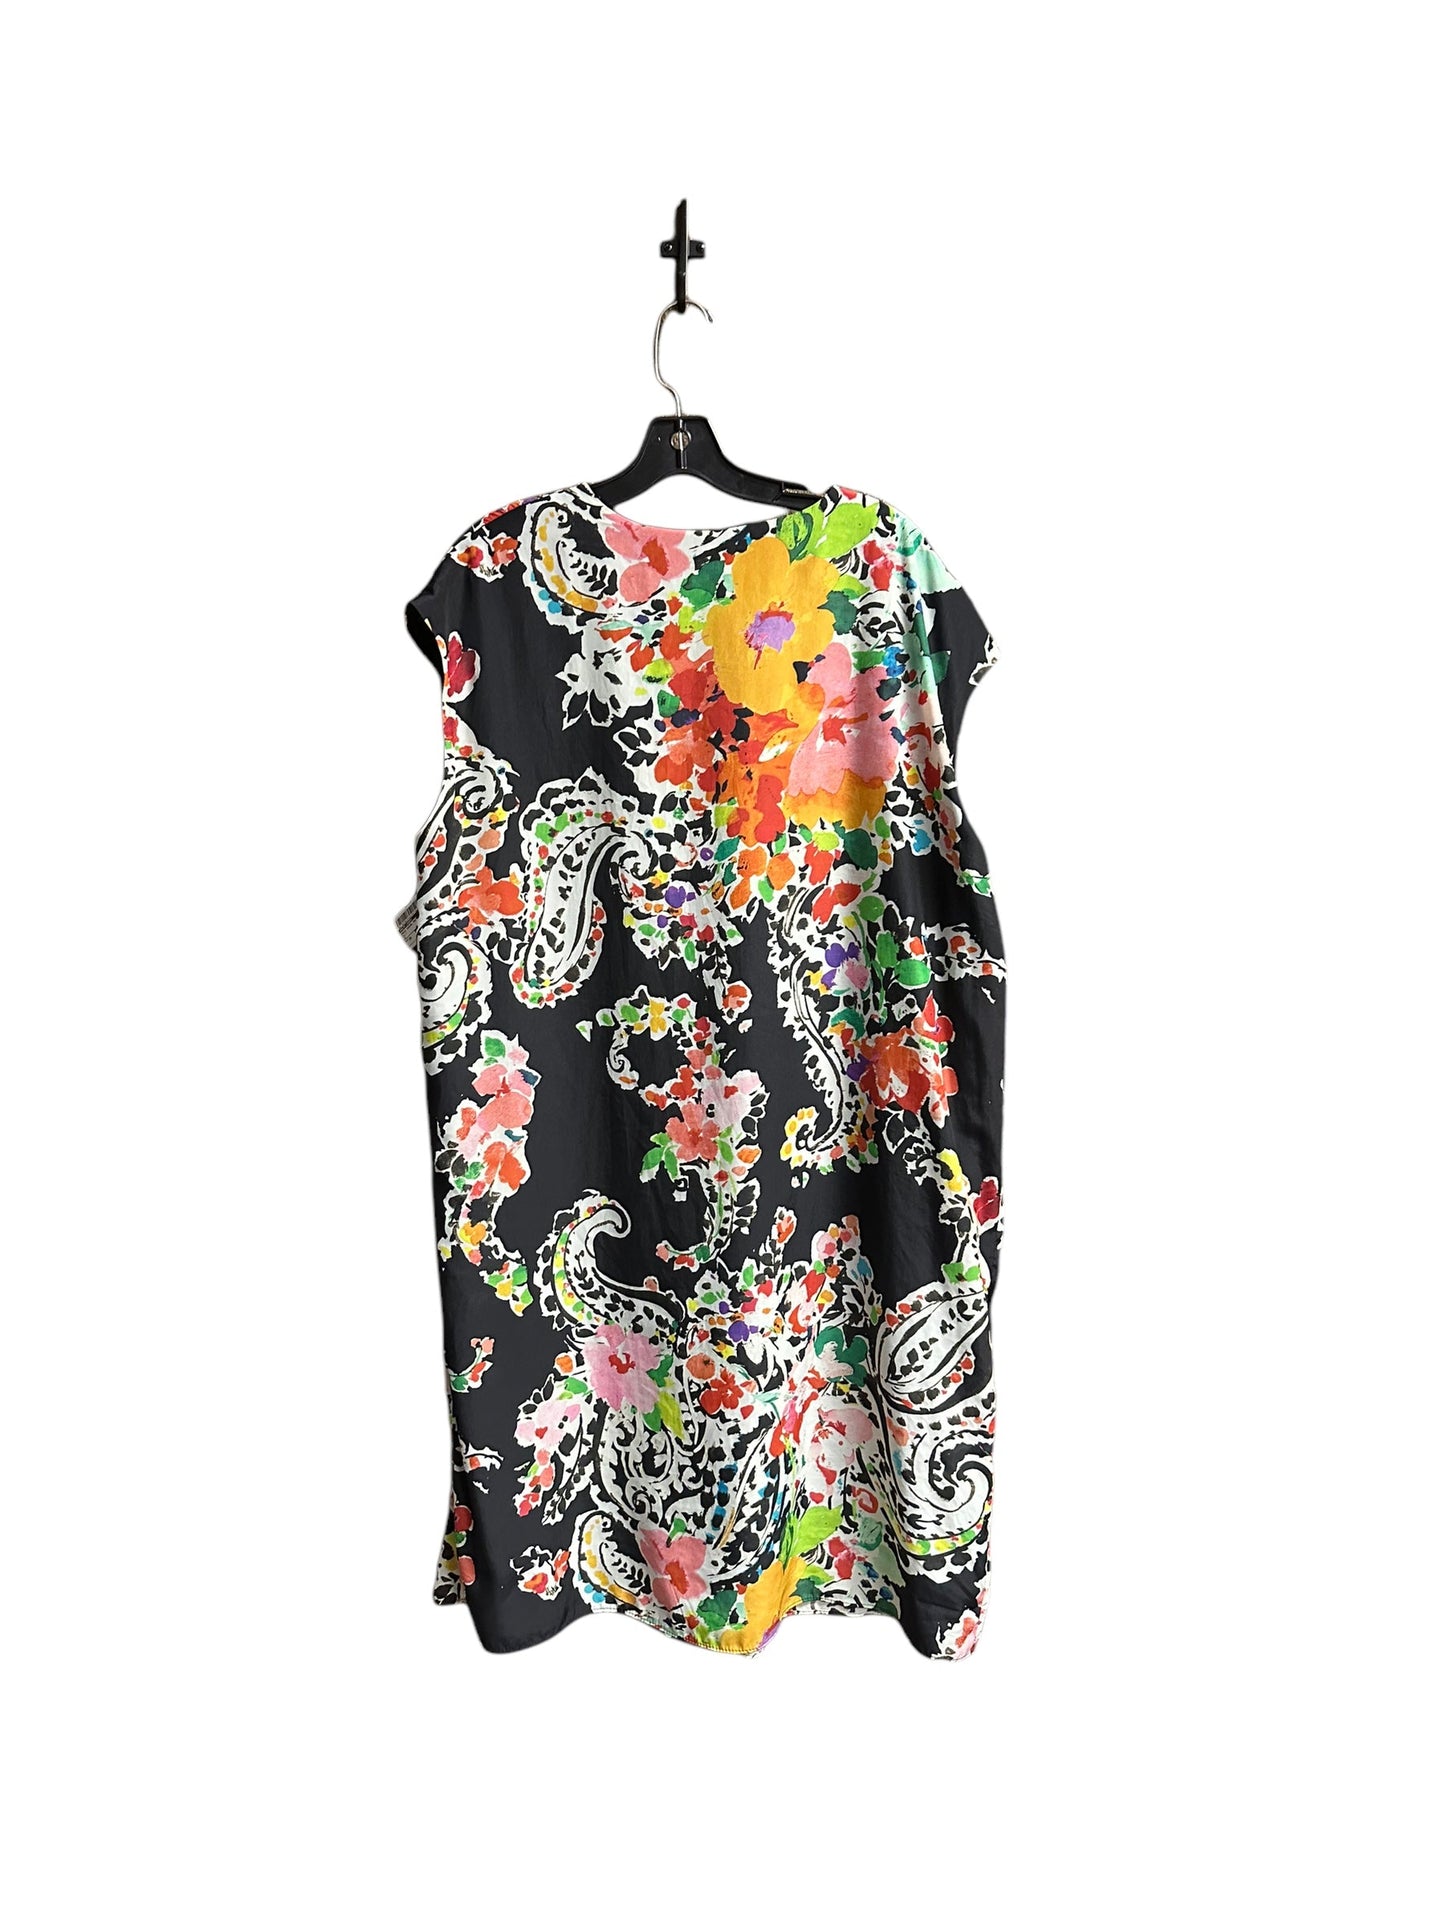 Dress Casual Maxi By Ralph Lauren  Size: 3x